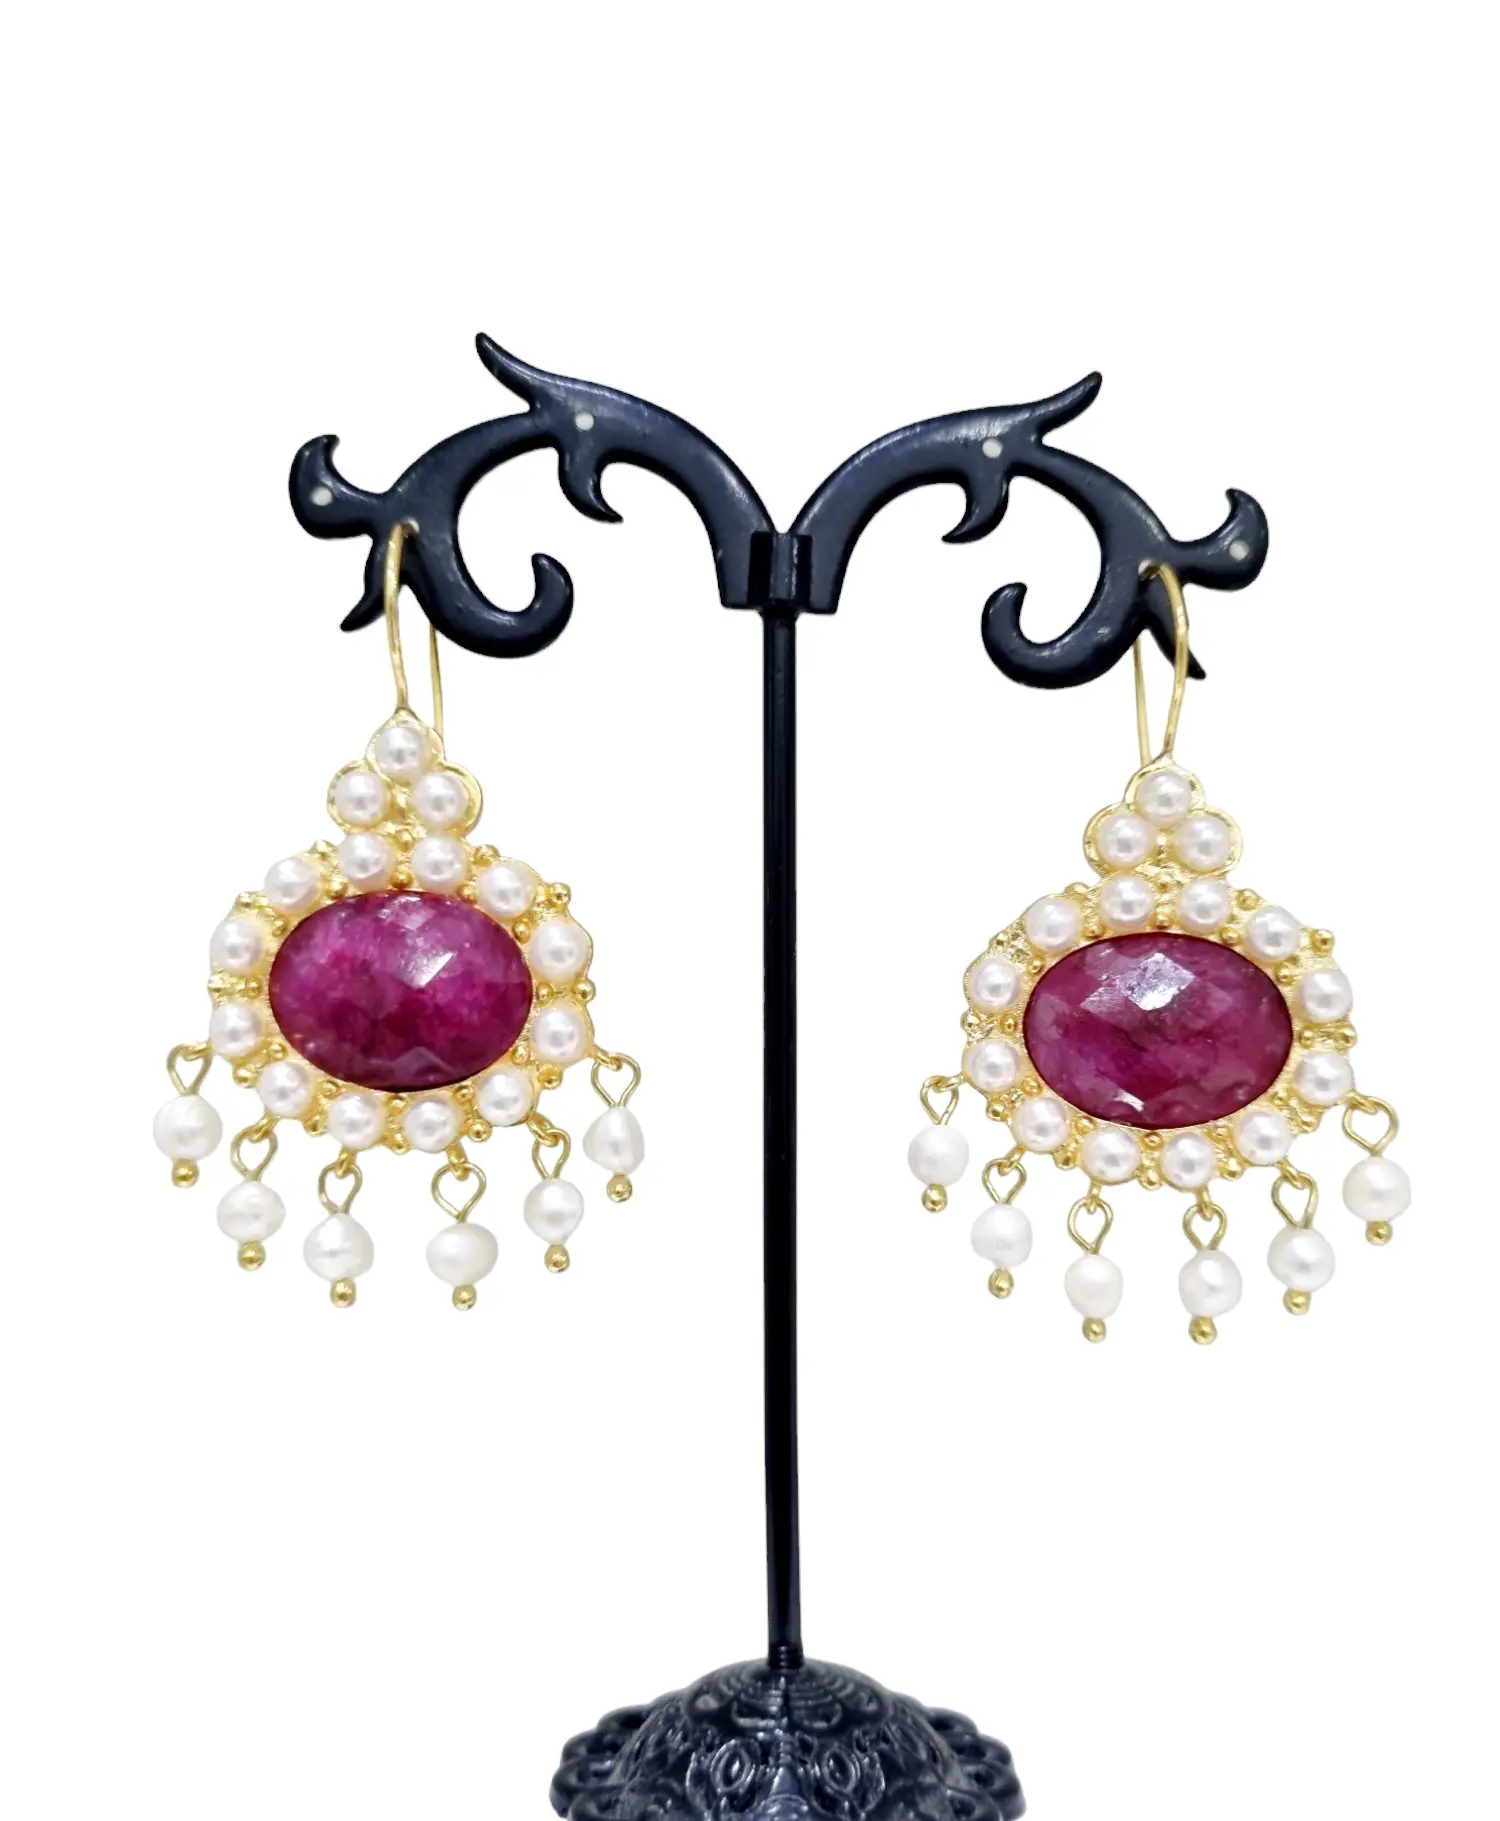 Orecchini artigianali con radice di rubino e perle di fiume incastonate – Lunghezza 5,5 cm